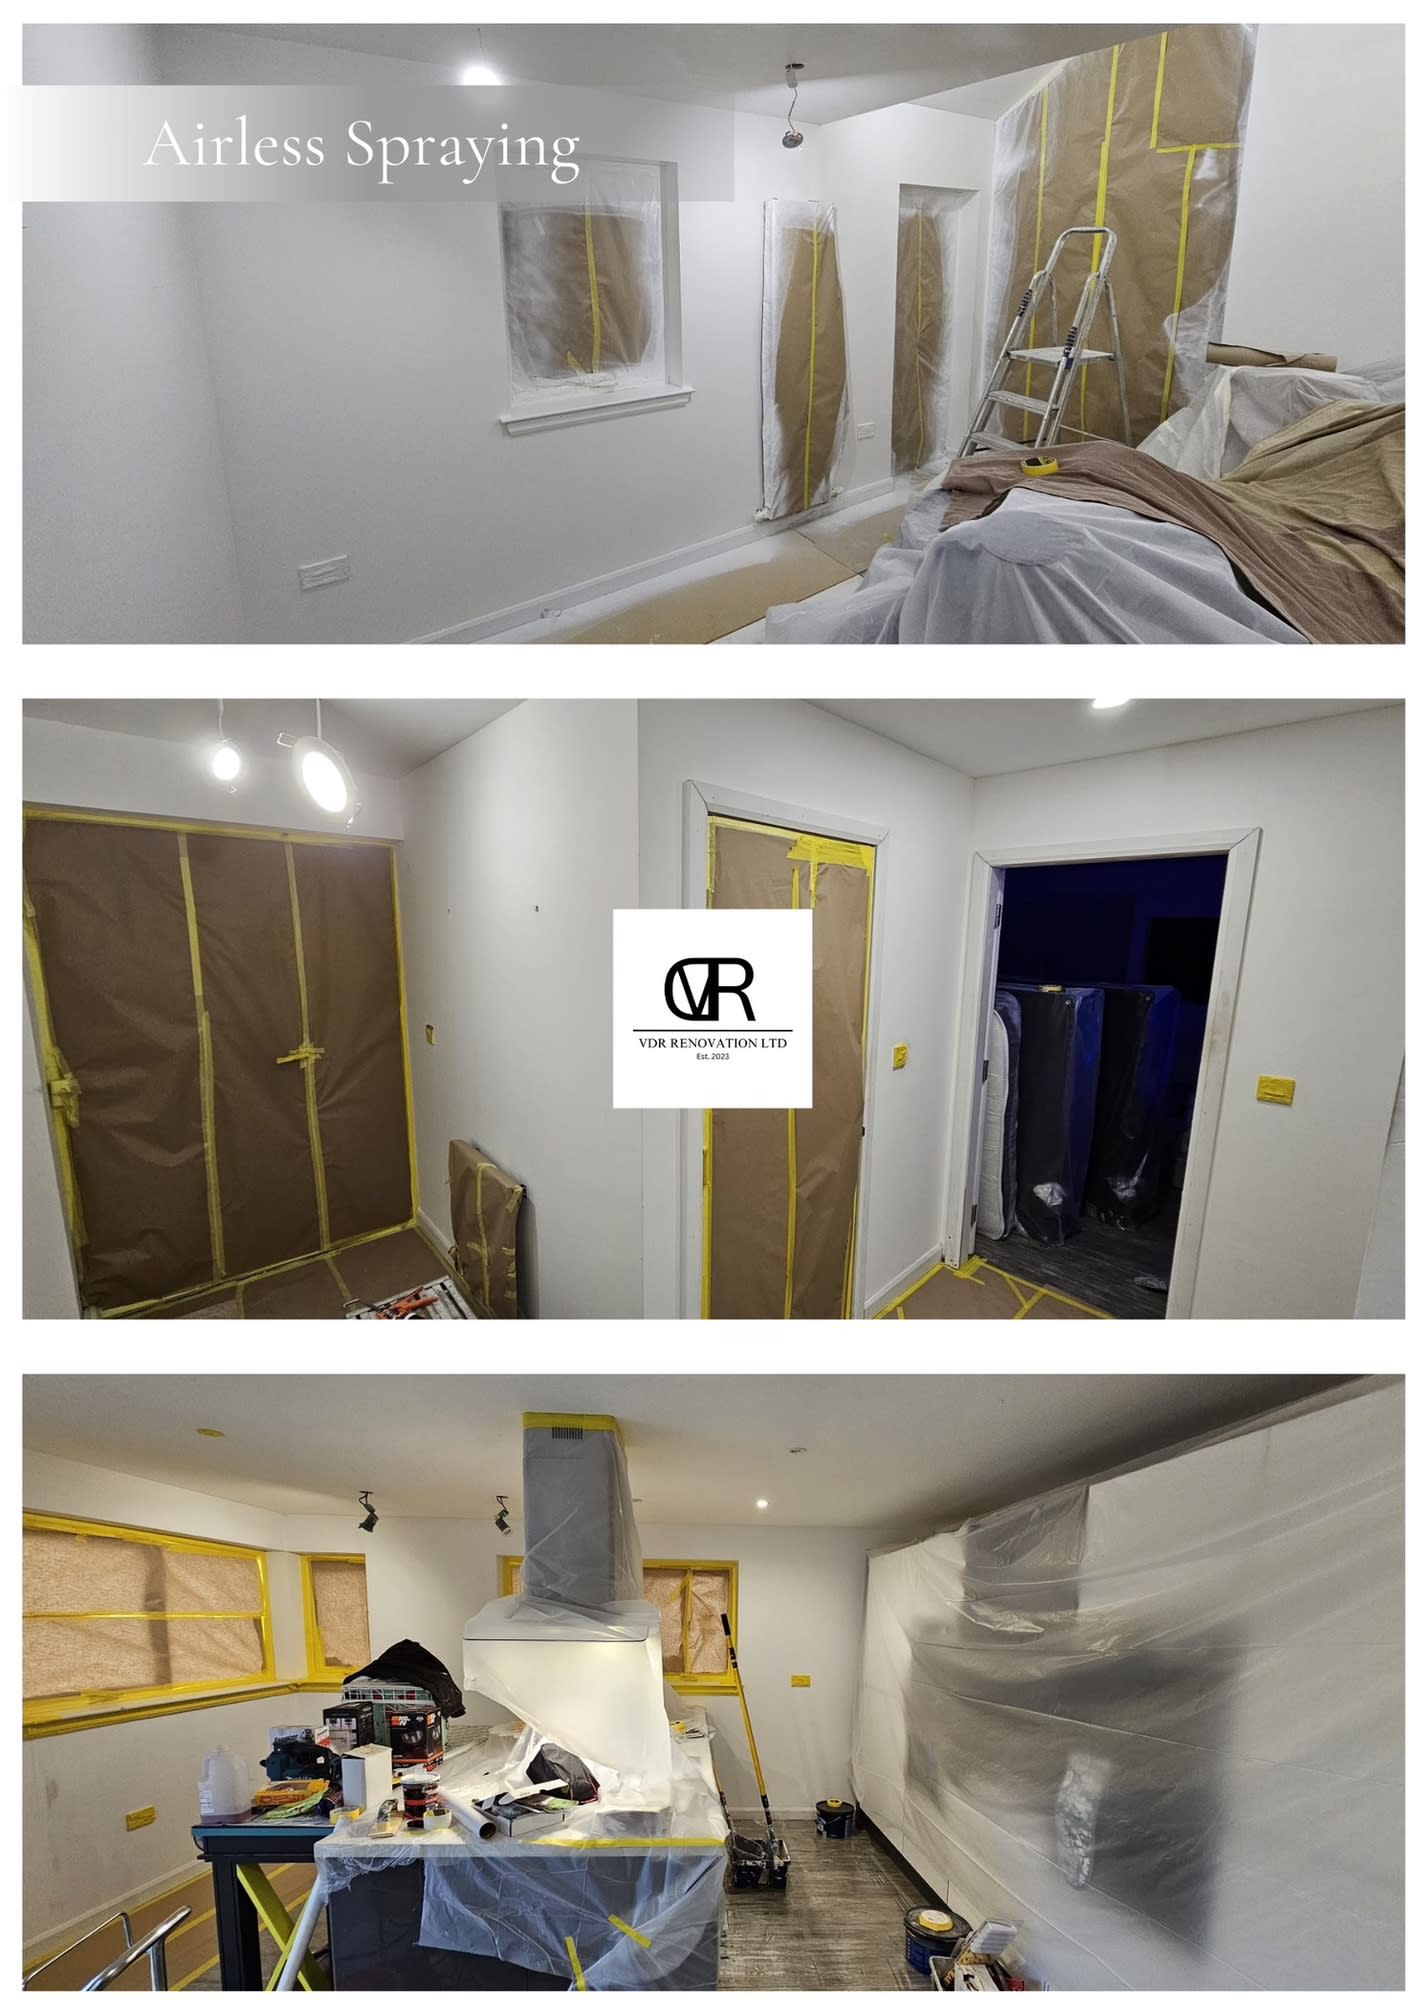 Images VDR Renovation Ltd